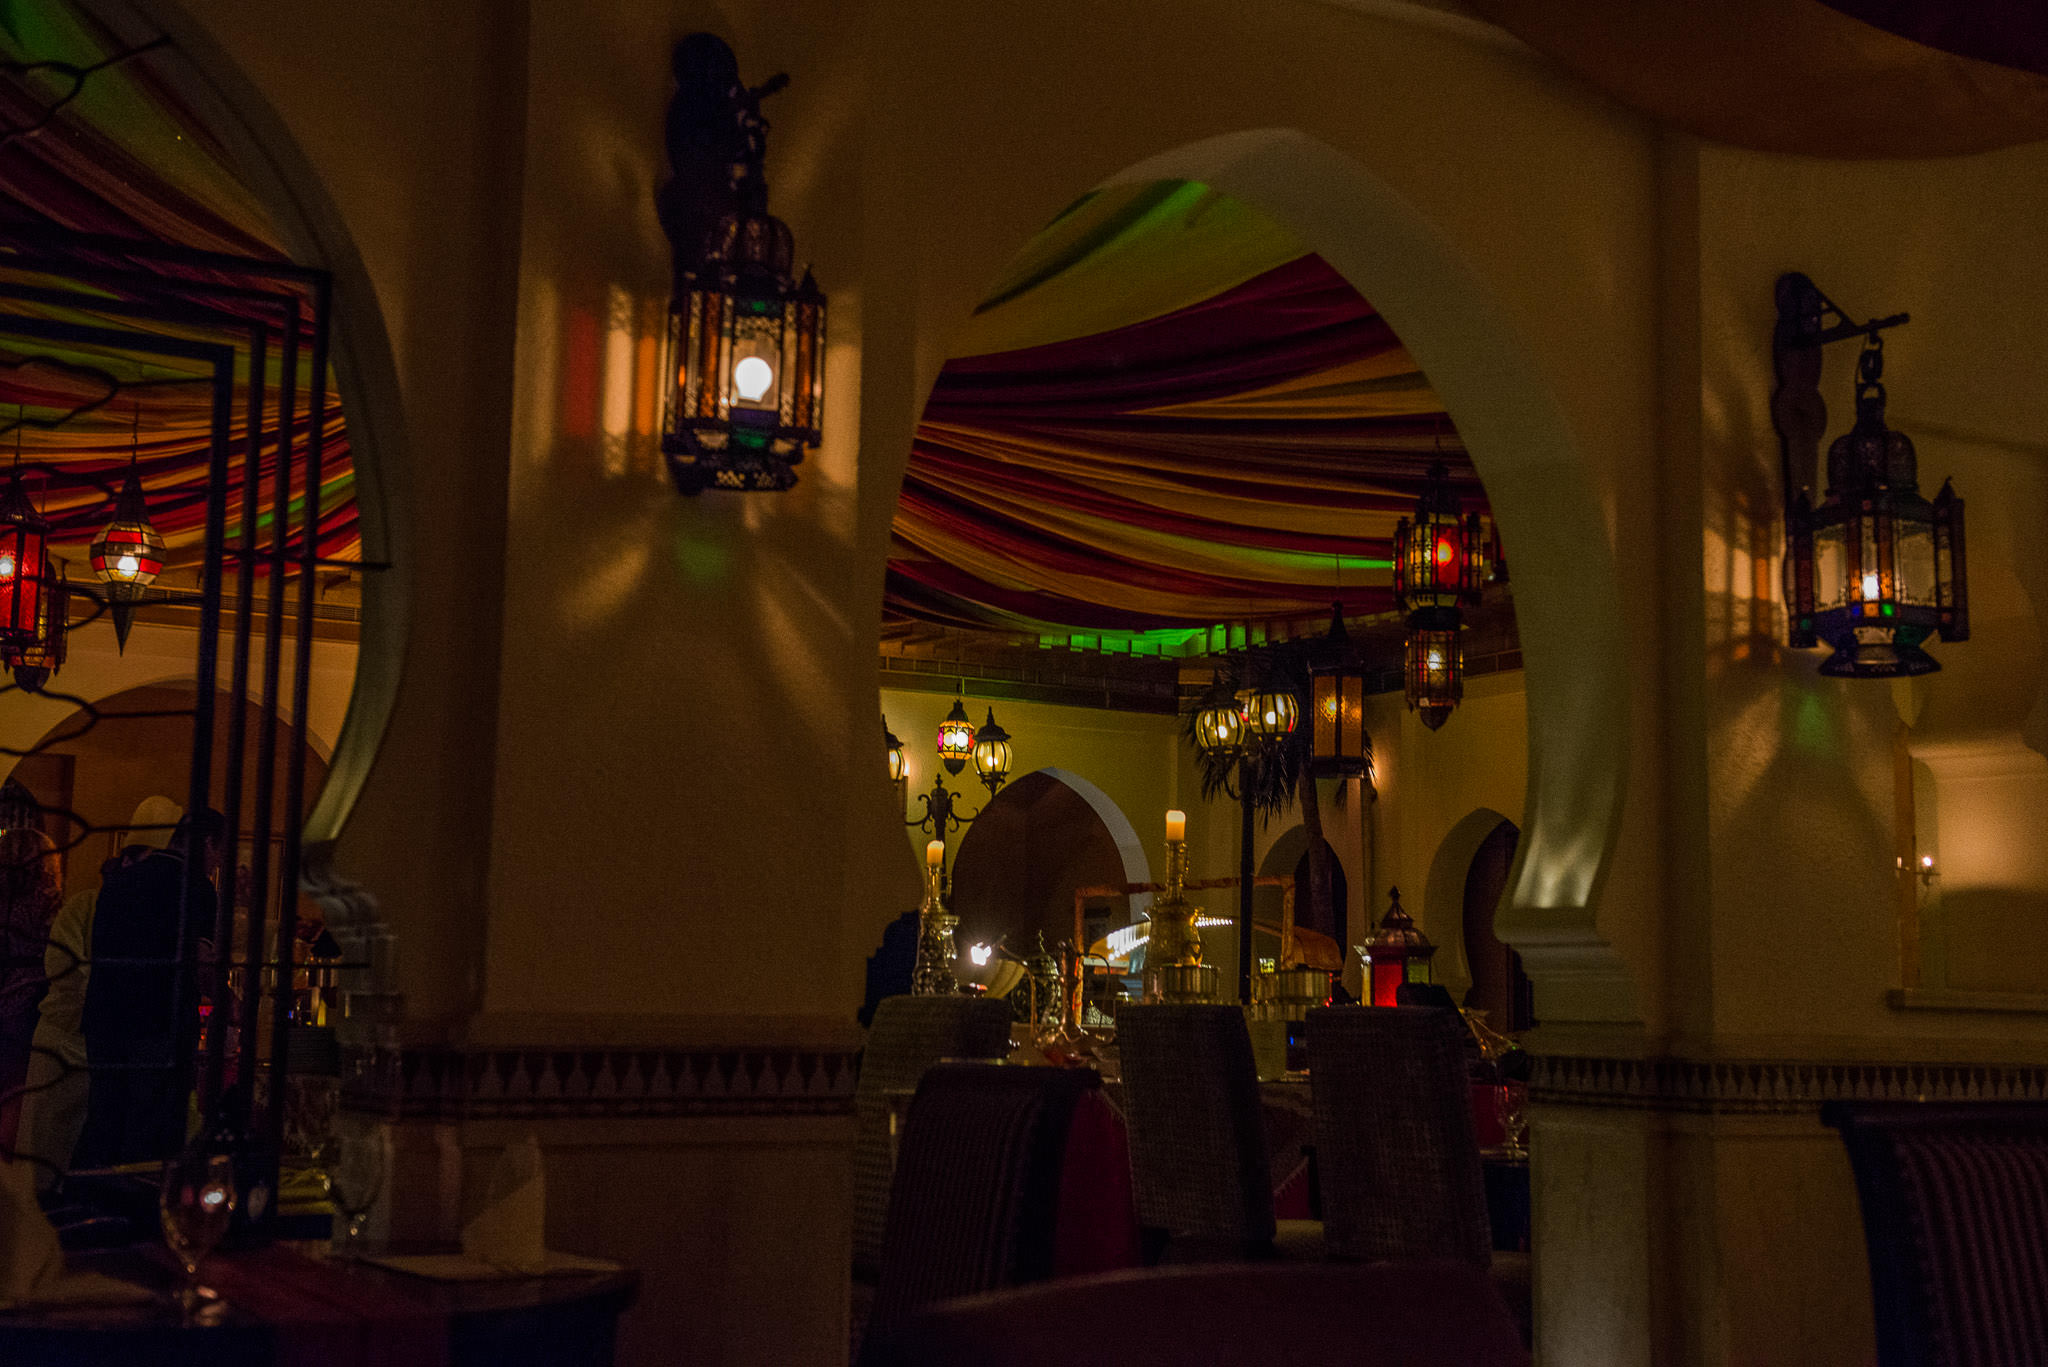 Marrakech restaurant